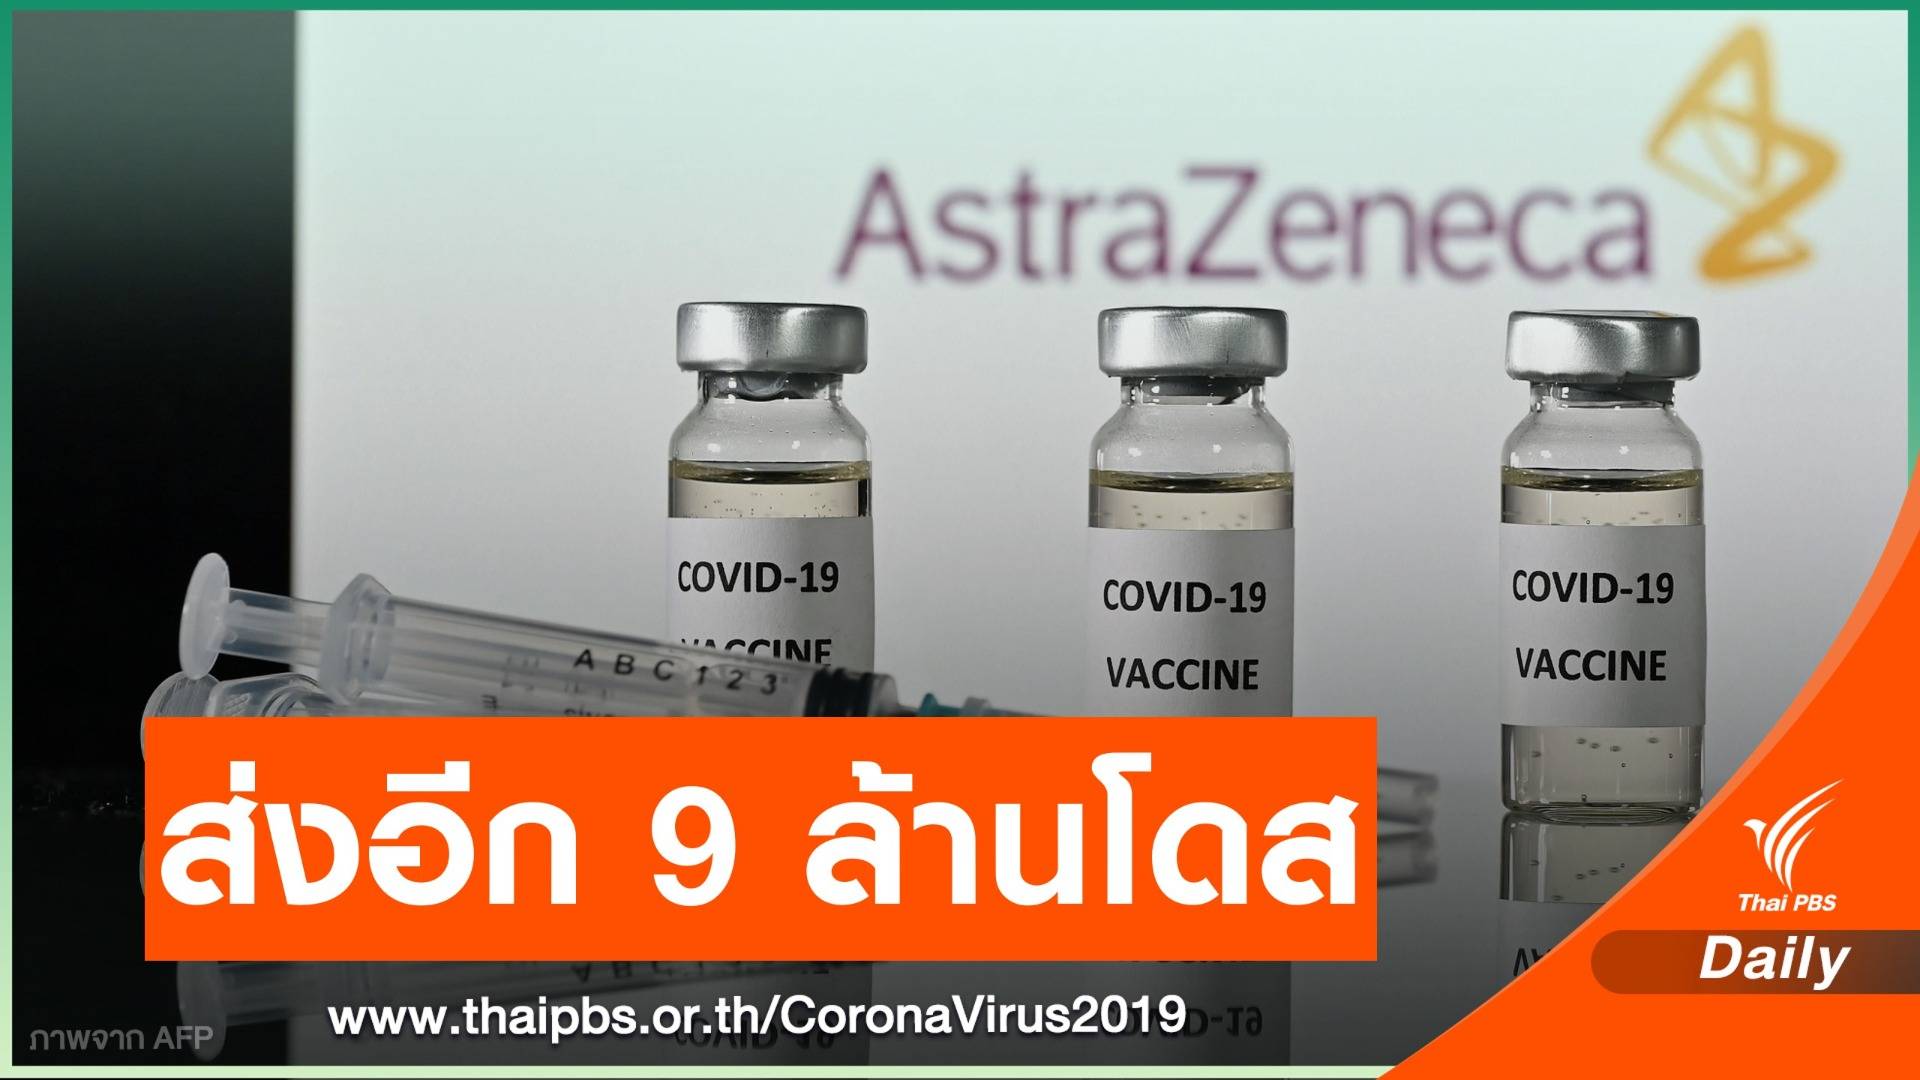 "แอสตราเซเนกา" เตรียมส่งวัคซีน COVID-19 ให้อียูอีก 9 ล้านโดส